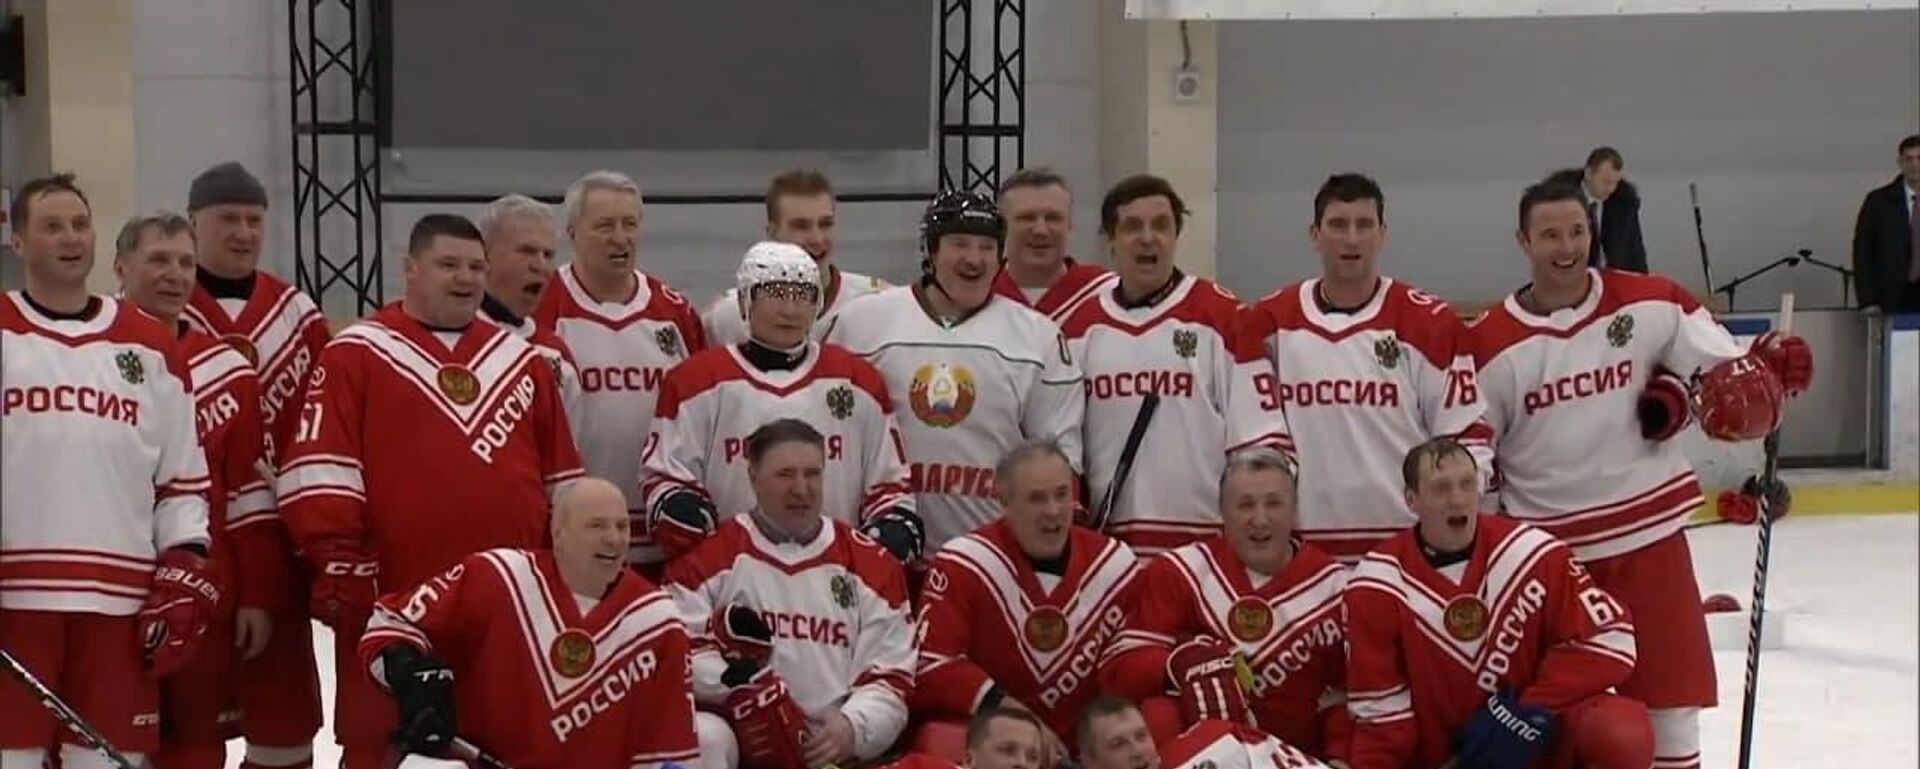 Как выглядел президентский хоккей с Путиным и Лукашенко – видео - Sputnik Беларусь, 1920, 30.12.2021